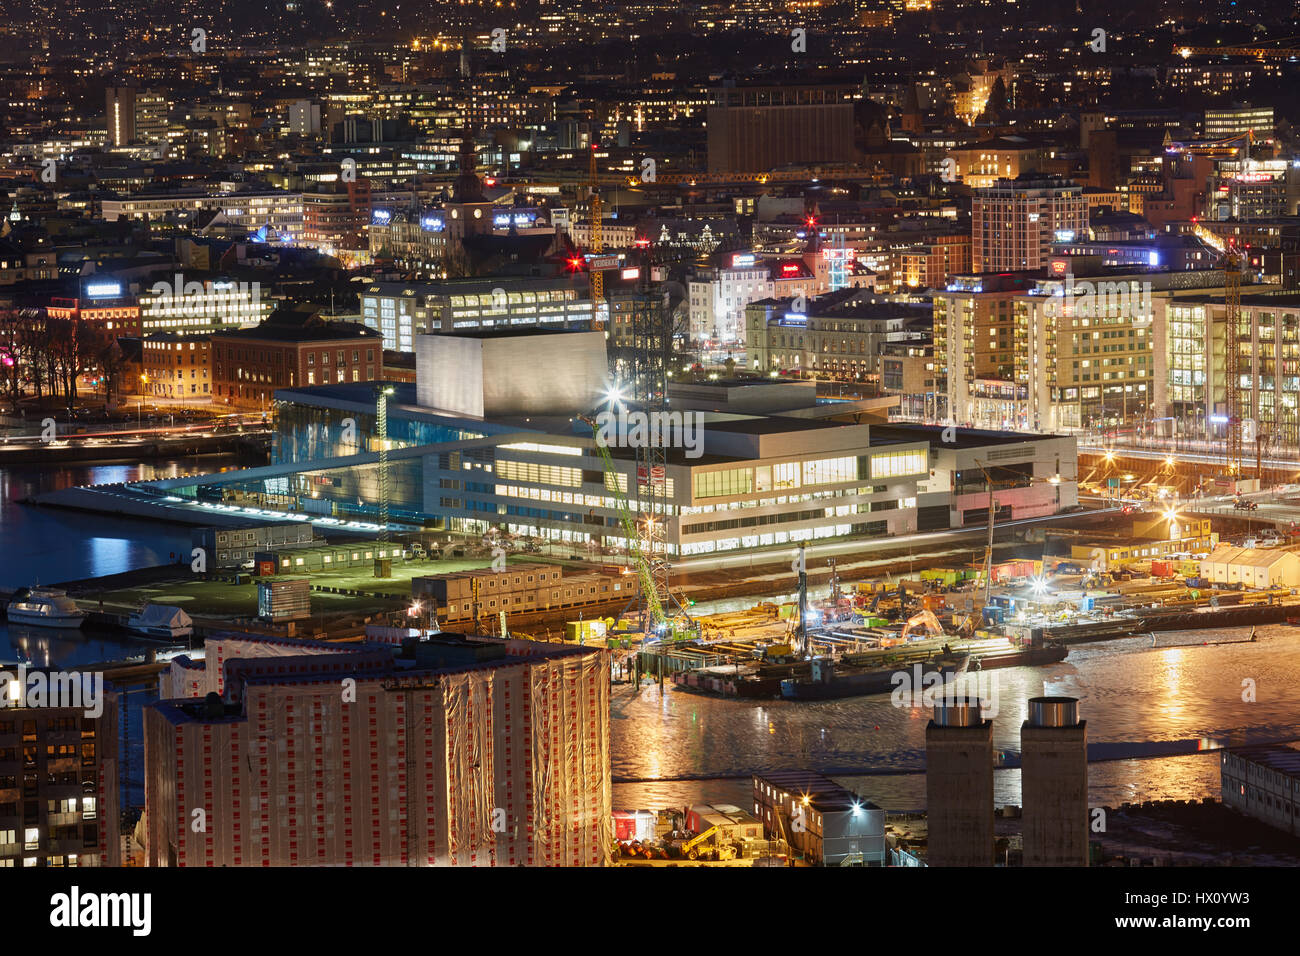 La Casa de la Ópera de Oslo por la noche en el centro de Oslo. La Ópera fue diseñada por Tarald Lundevall y es el mayor edificio construido cultural Foto de stock